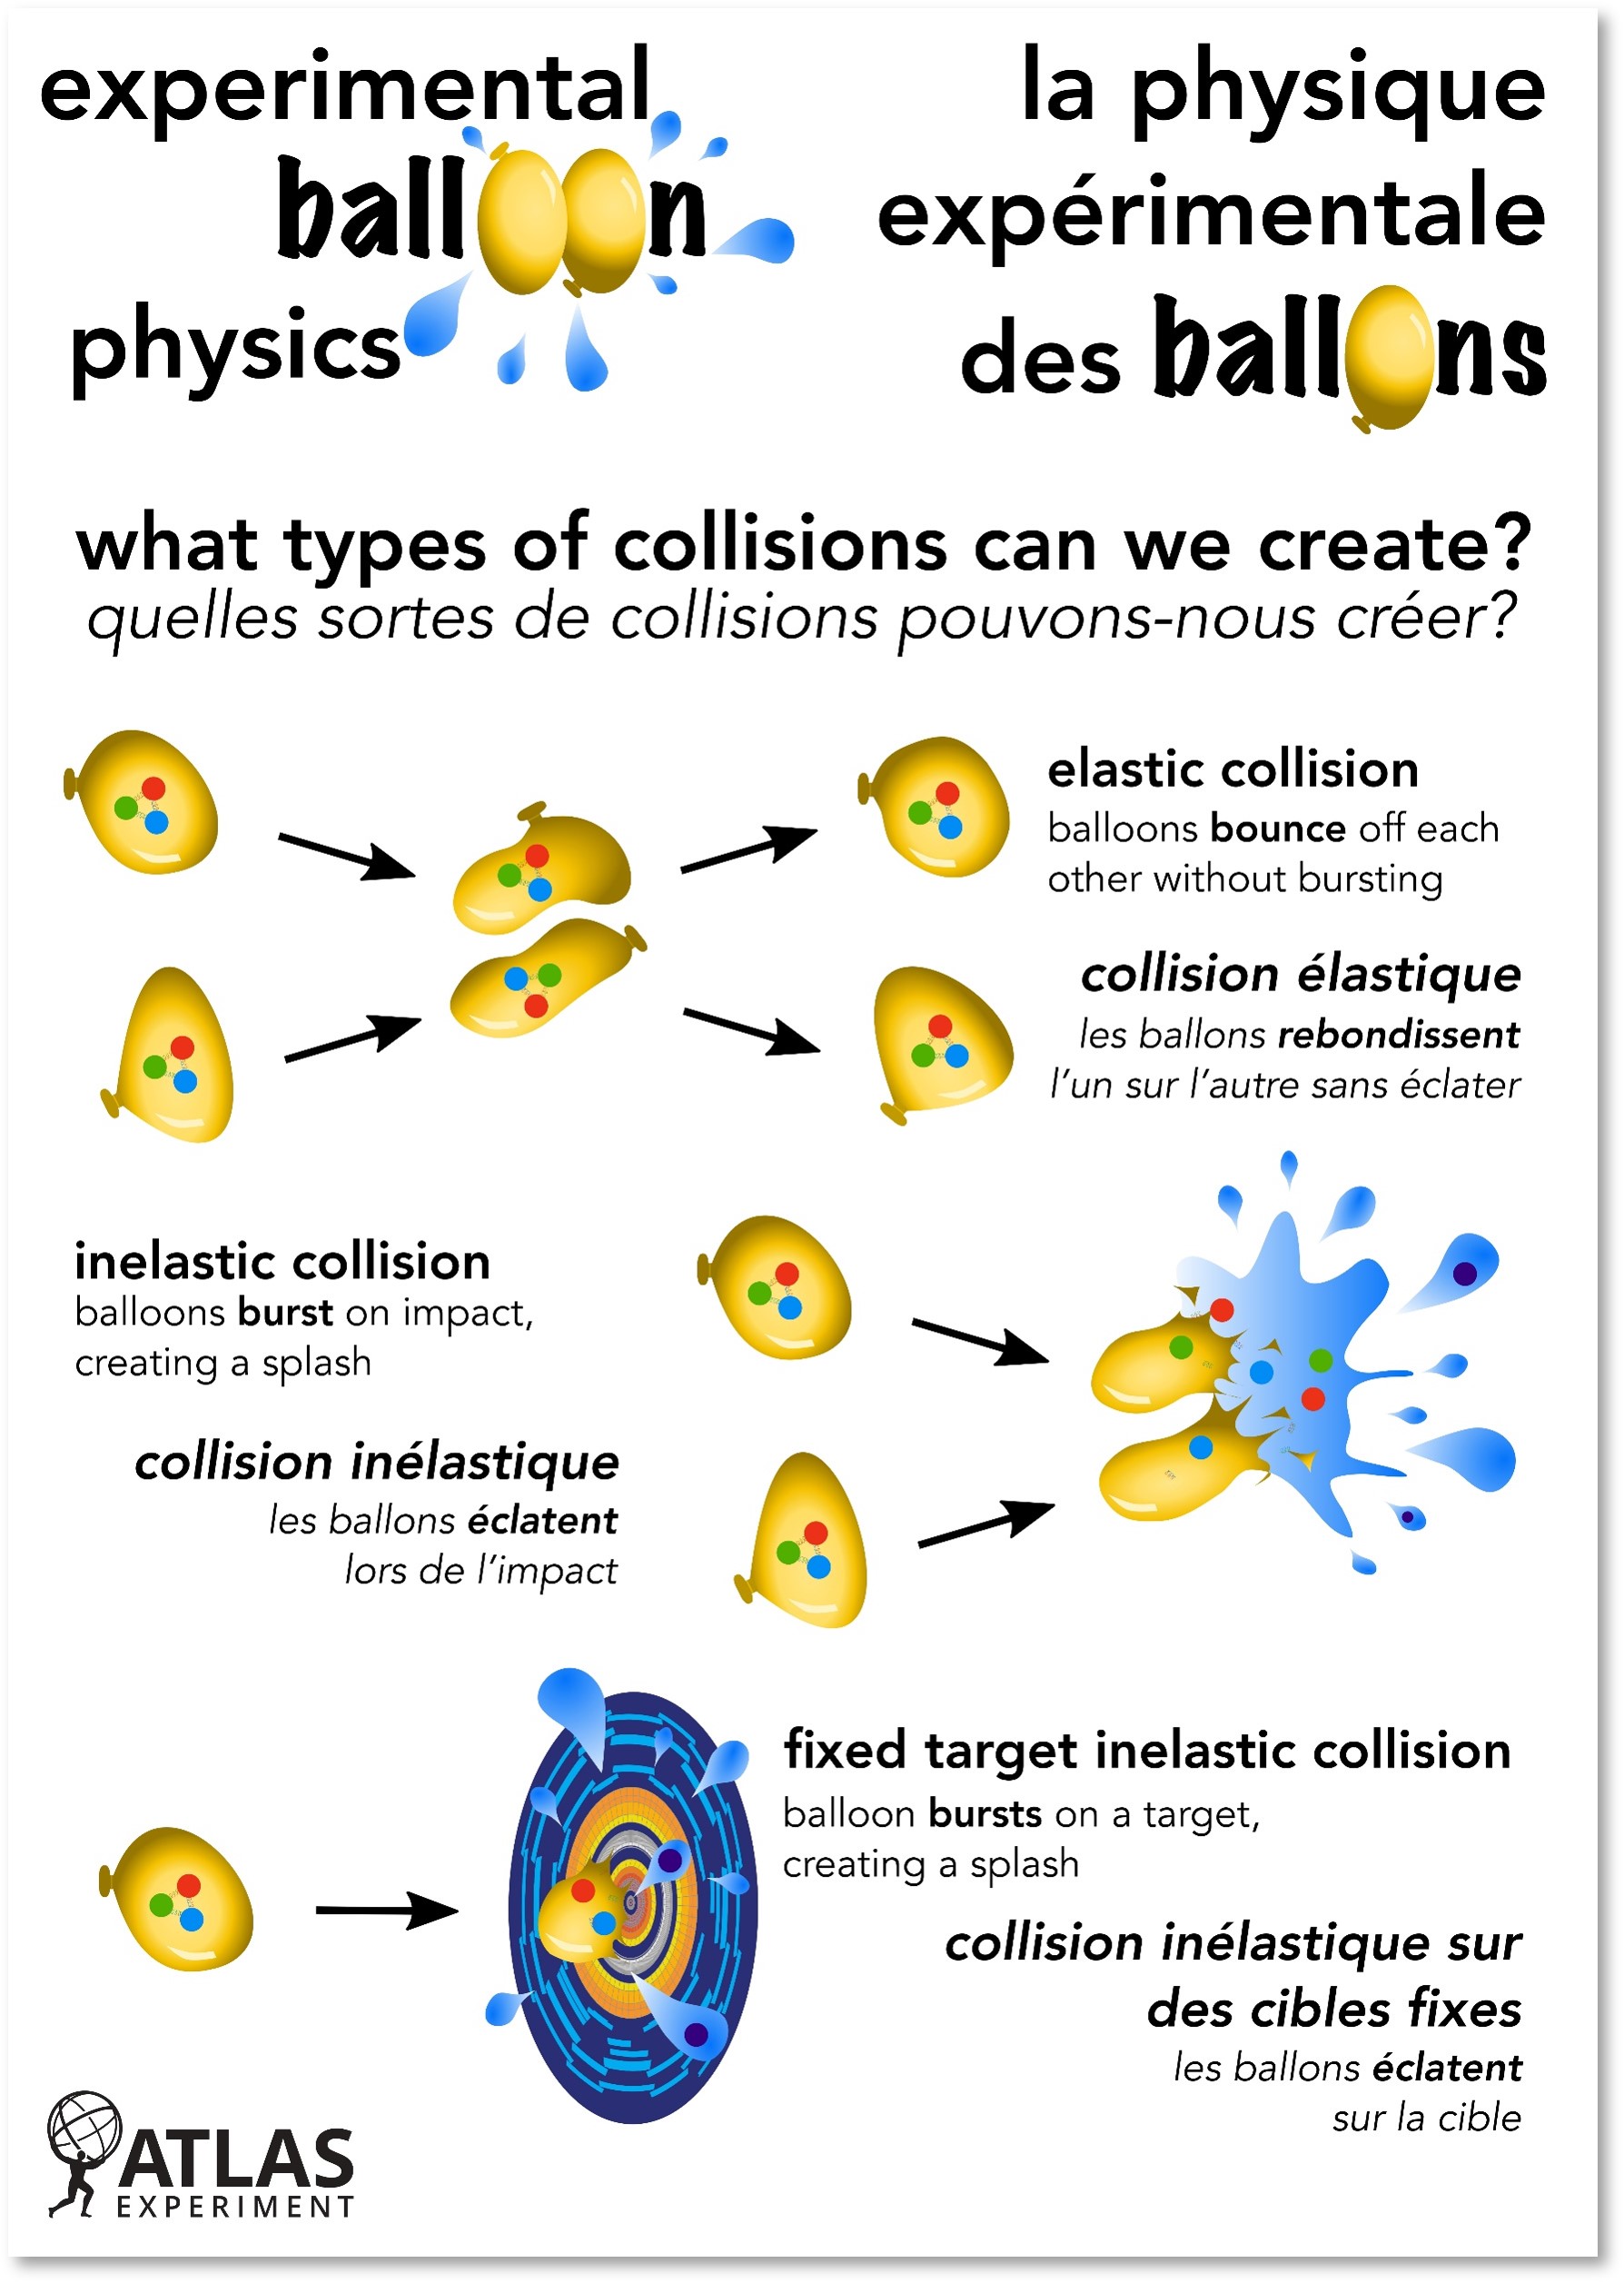 Making a Splash - Experimental Balloon Physics EN/FR